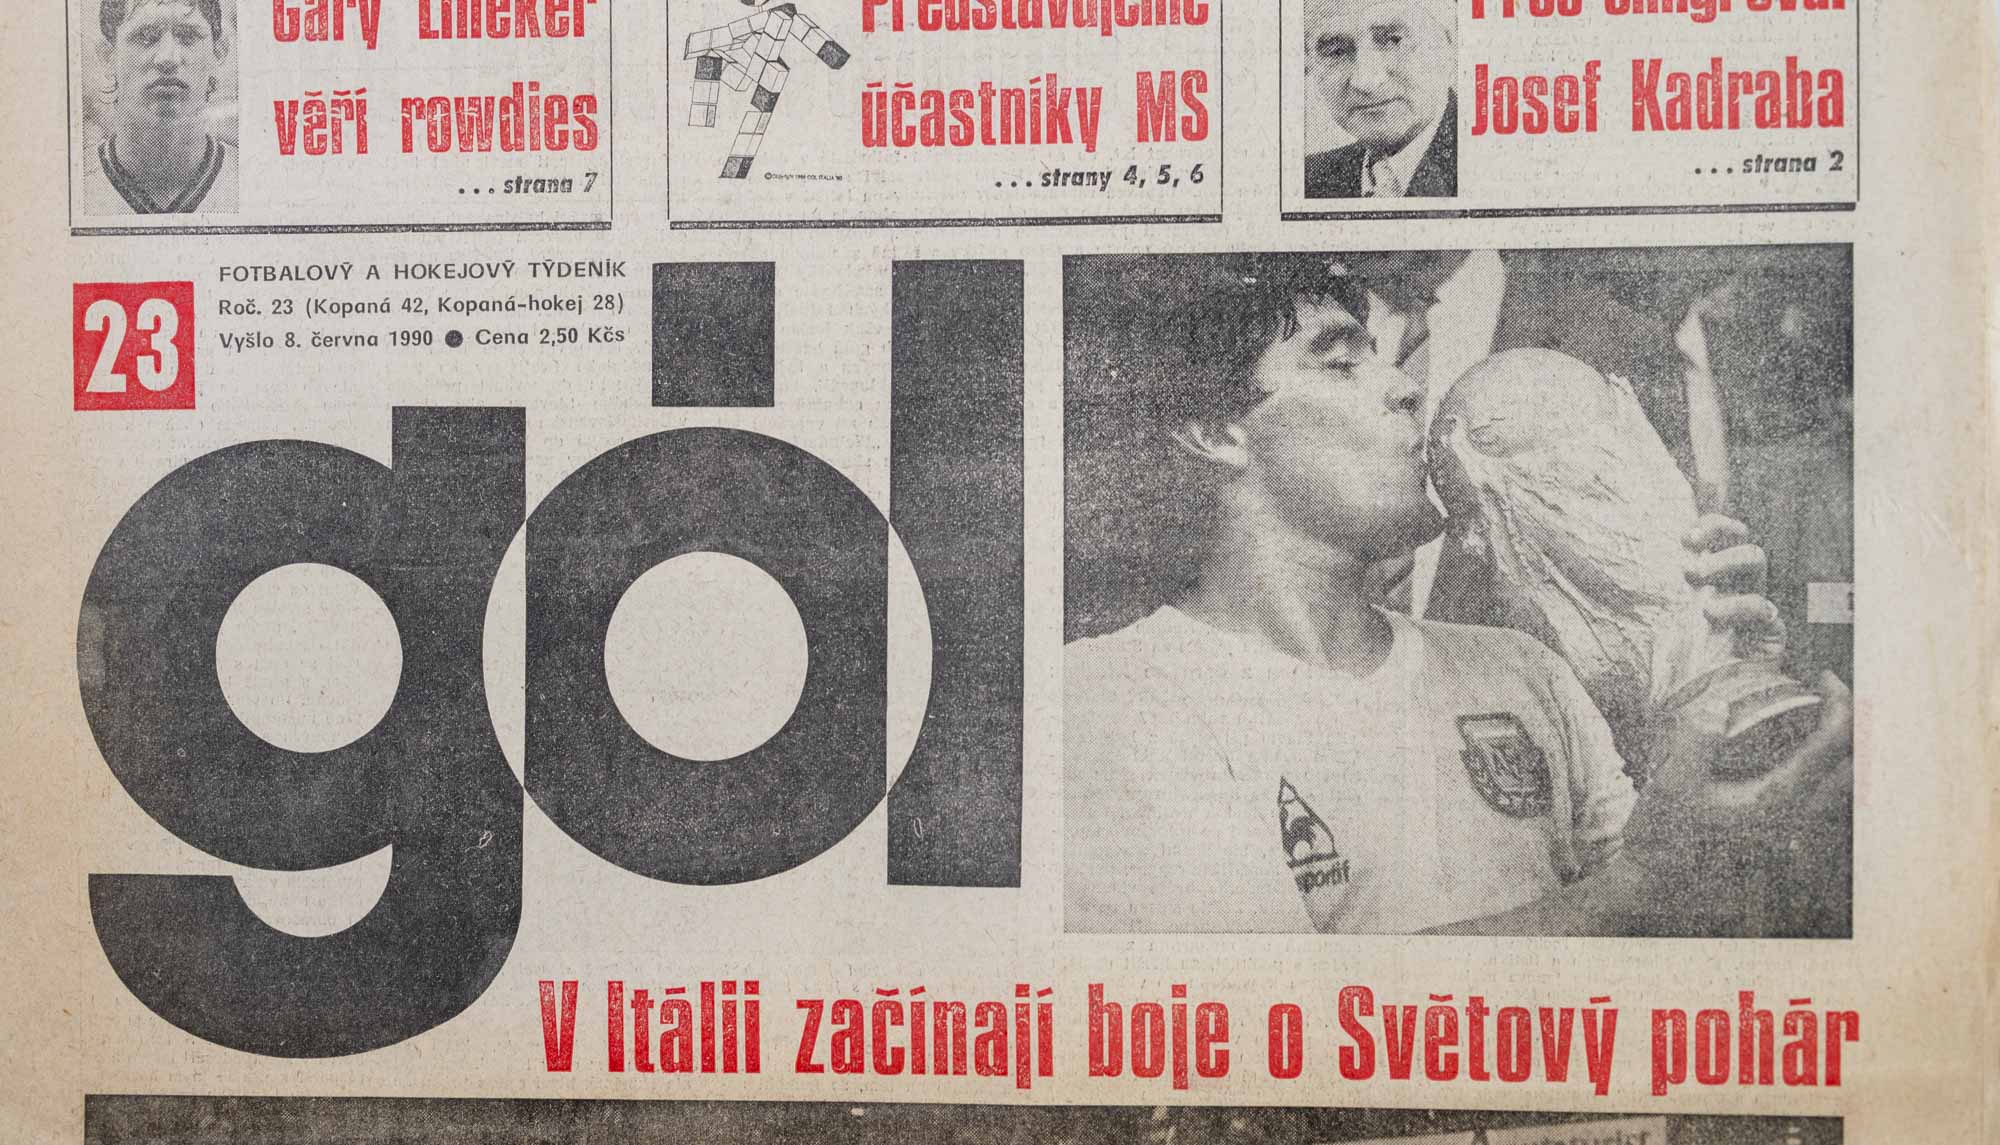 GÓL. Fotbalový a hokejový týdeník, 23/42/28/1990 č. 23